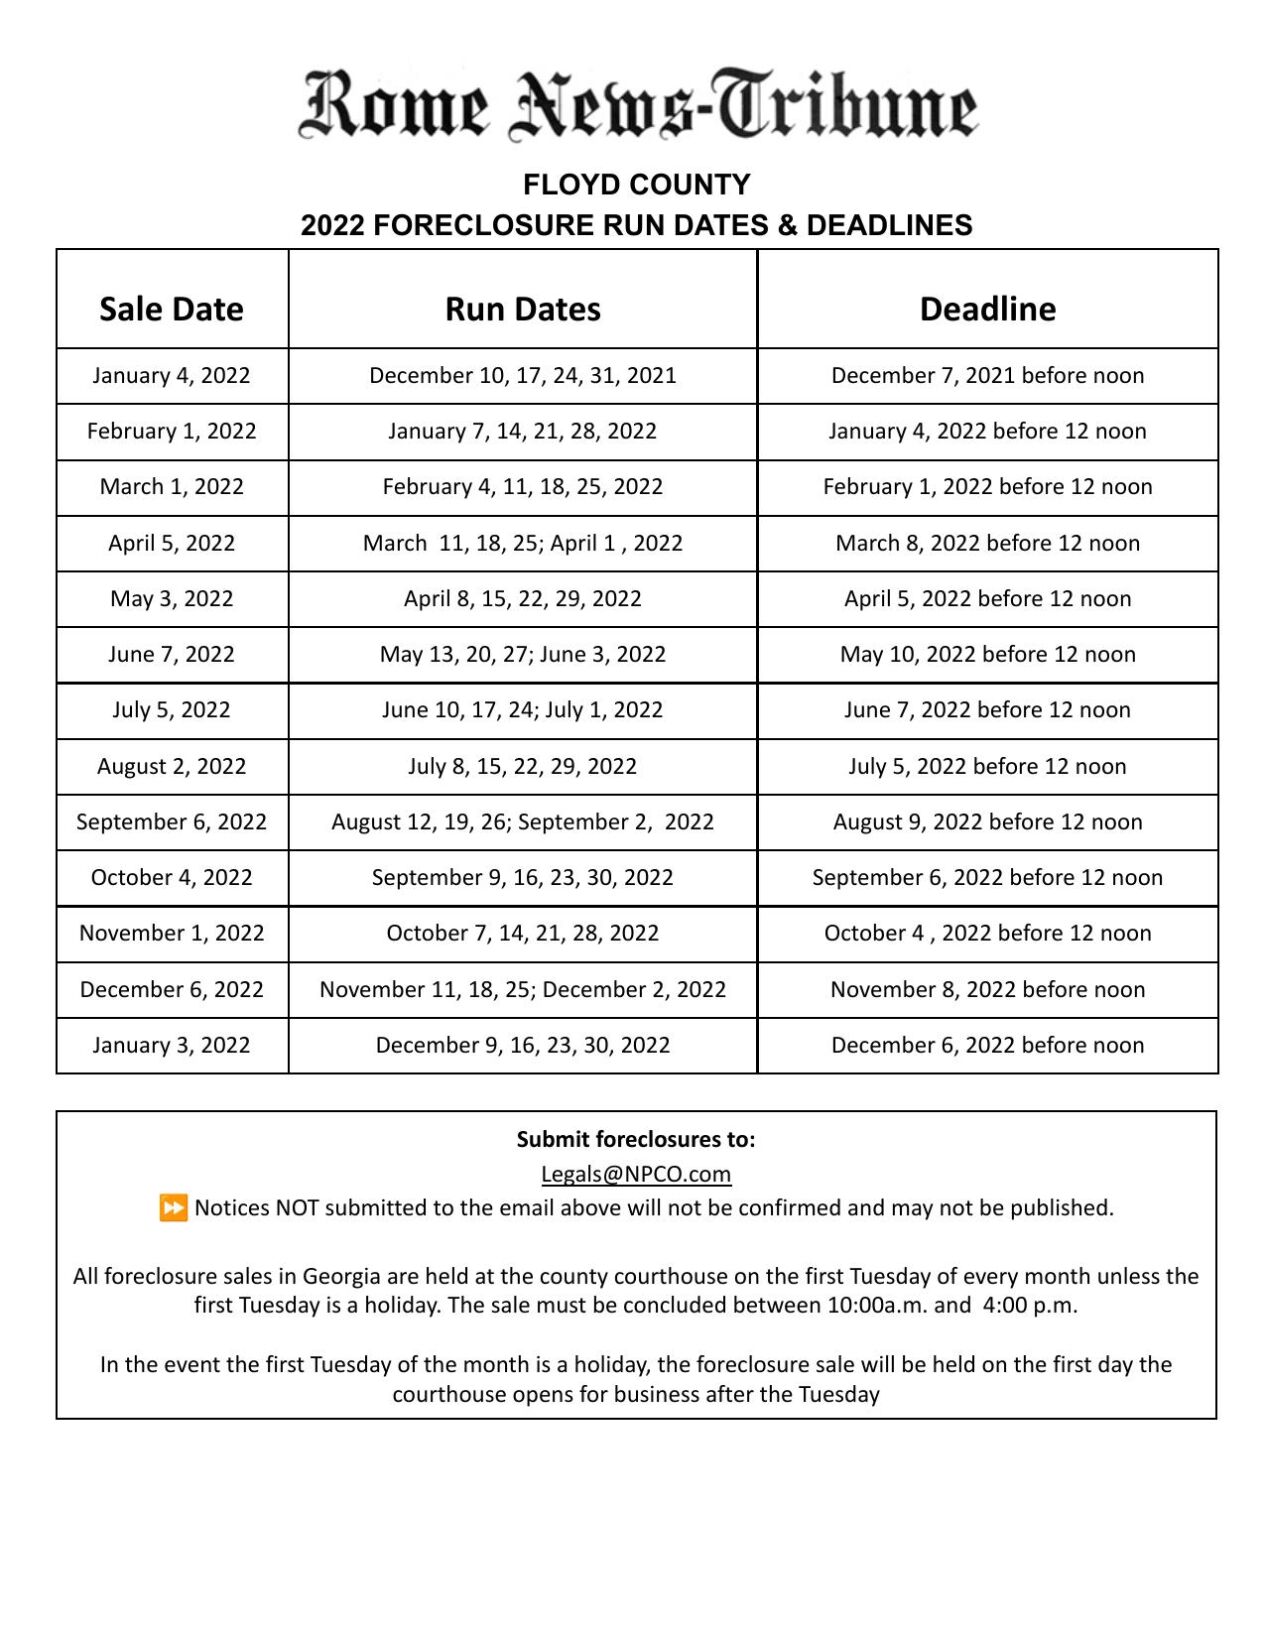 Foreclosure Deadlines